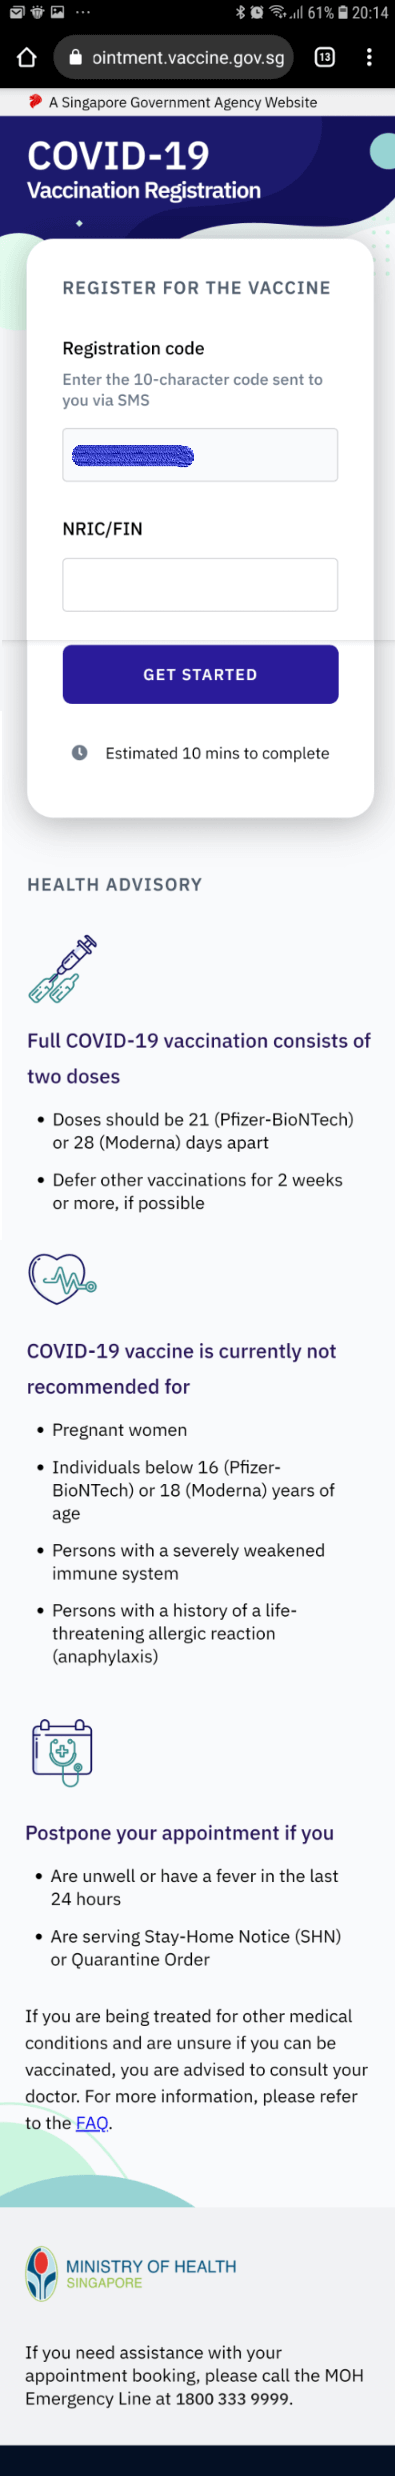 シンガポールでの「新型コロナワクチン」無料接種の申込方法について